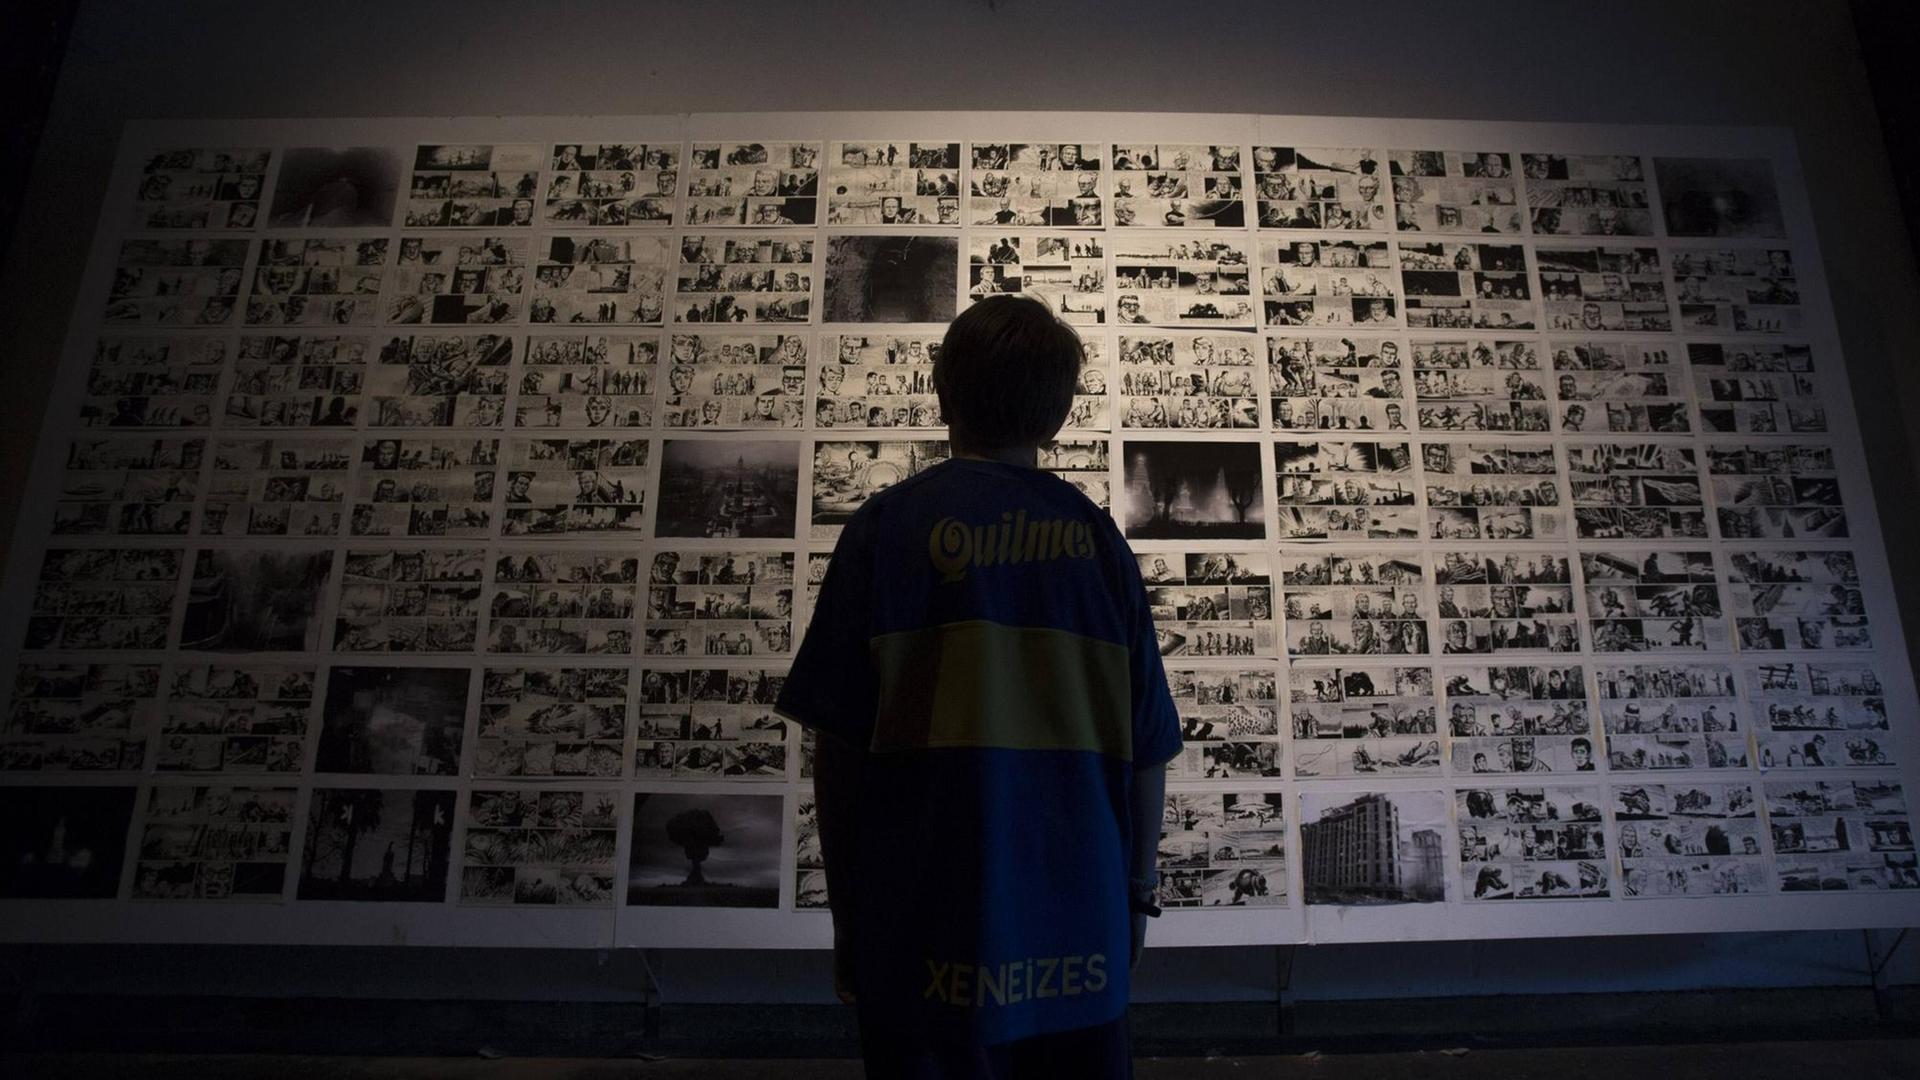 Ein Junge betrachtet die Seiten des Comics "El Eternauta" auf dem Internationalen Comic-Festival Comicopolis 2014 im Tecnopolis Forum in Buenos Aires.